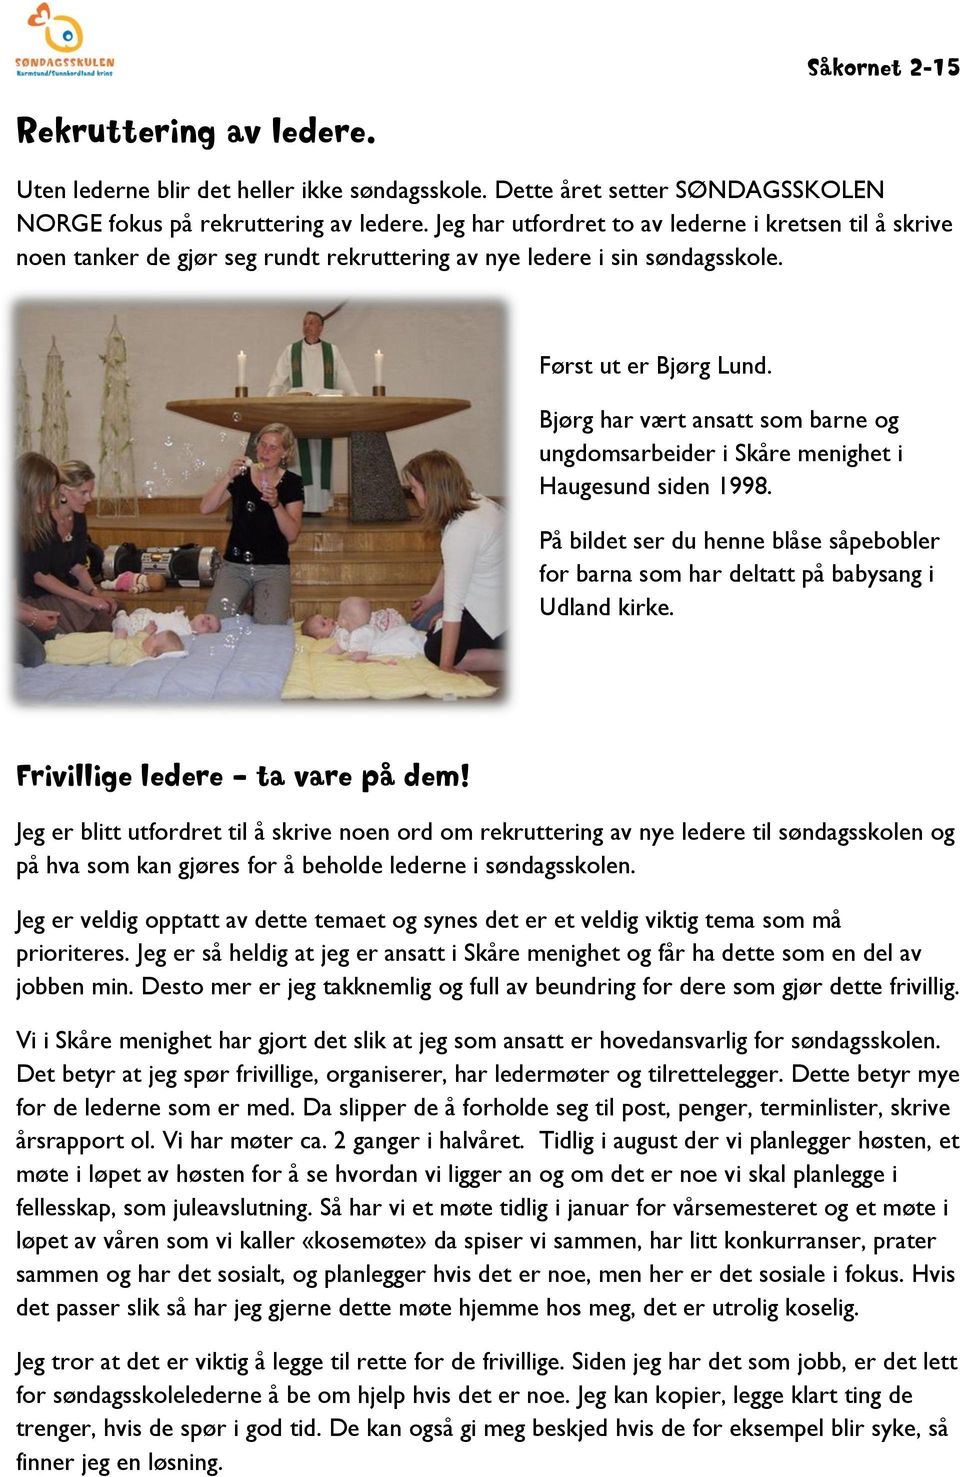 Bjørg har vært ansatt som barne og ungdomsarbeider i Skåre menighet i Haugesund siden 1998. På bildet ser du henne blåse såpebobler for barna som har deltatt på babysang i Udland kirke.